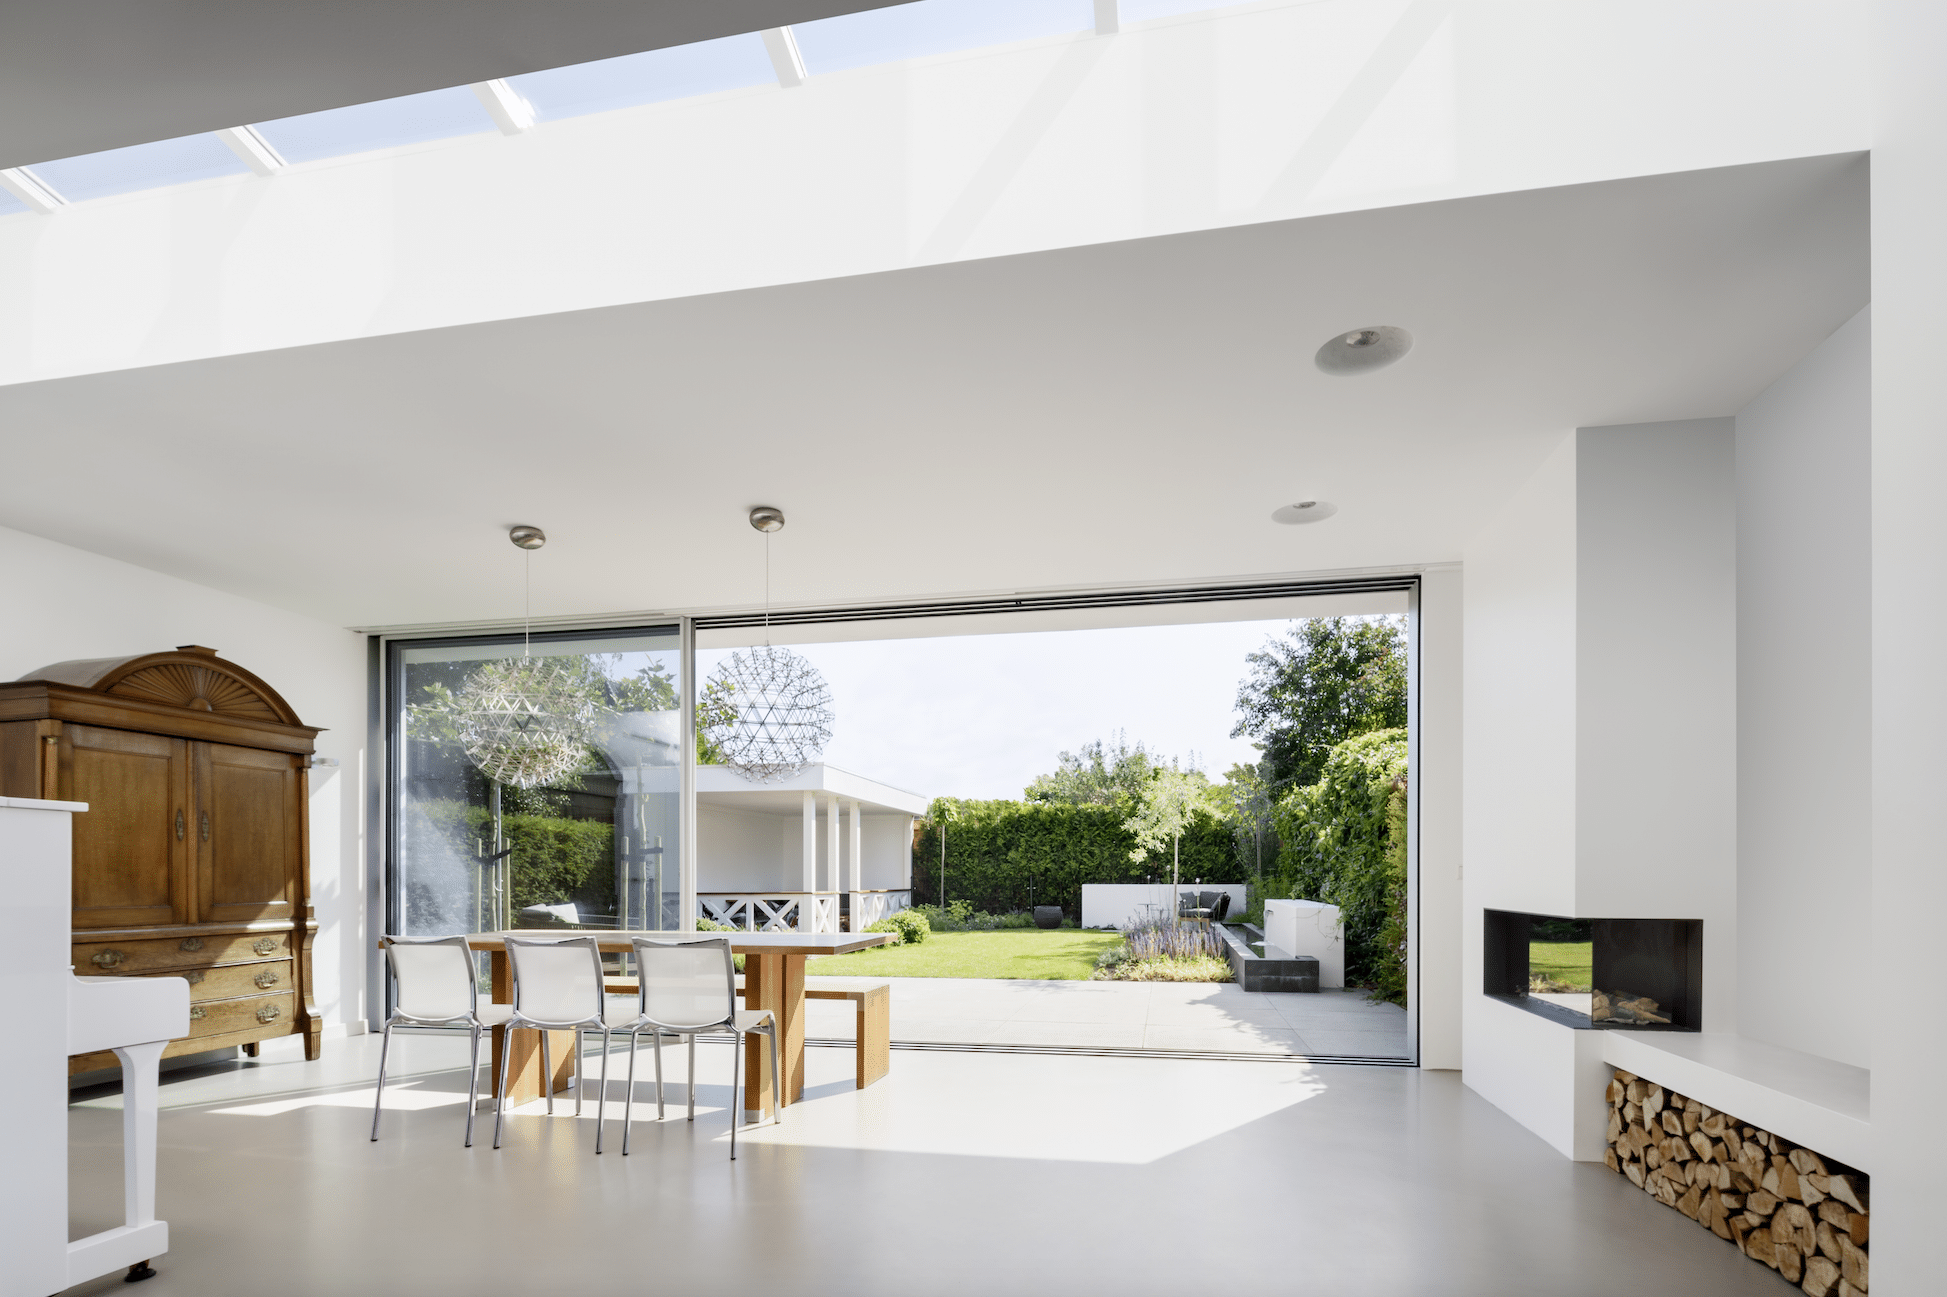 Offener Wohnraum mit geöffnetem Ganzglas-Schiebesystem von Solarlux.